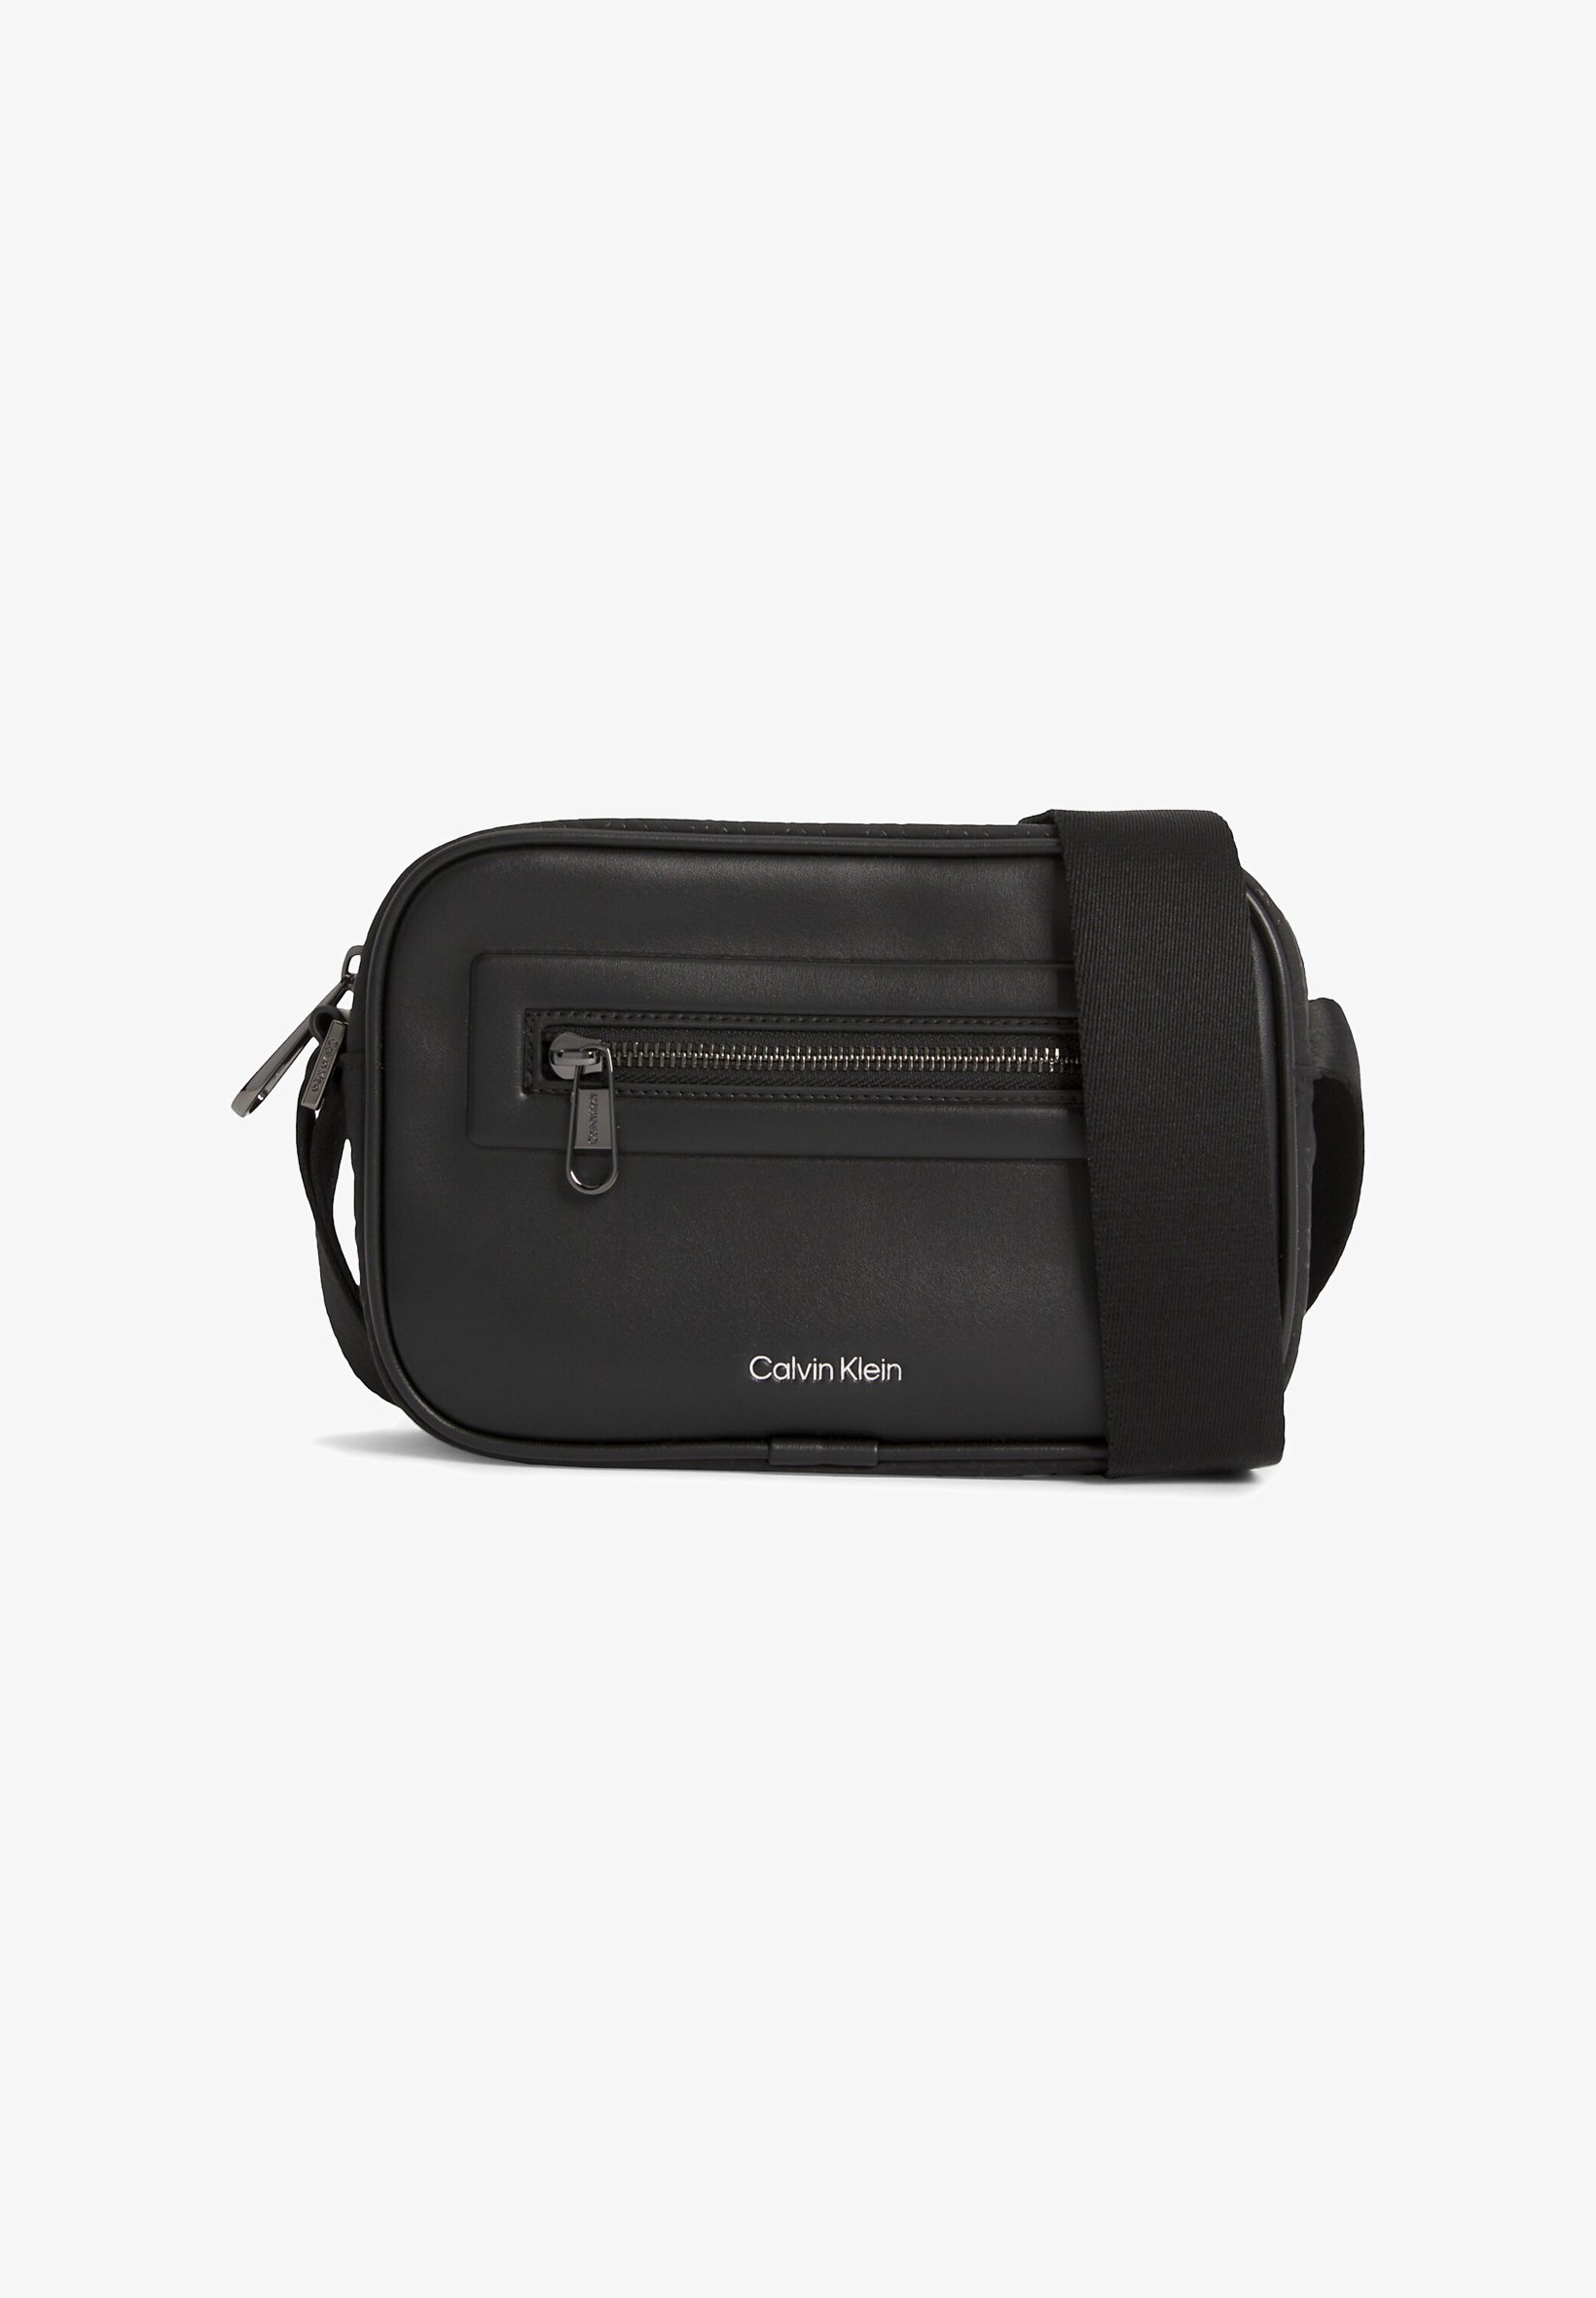 calvin klein camera bag